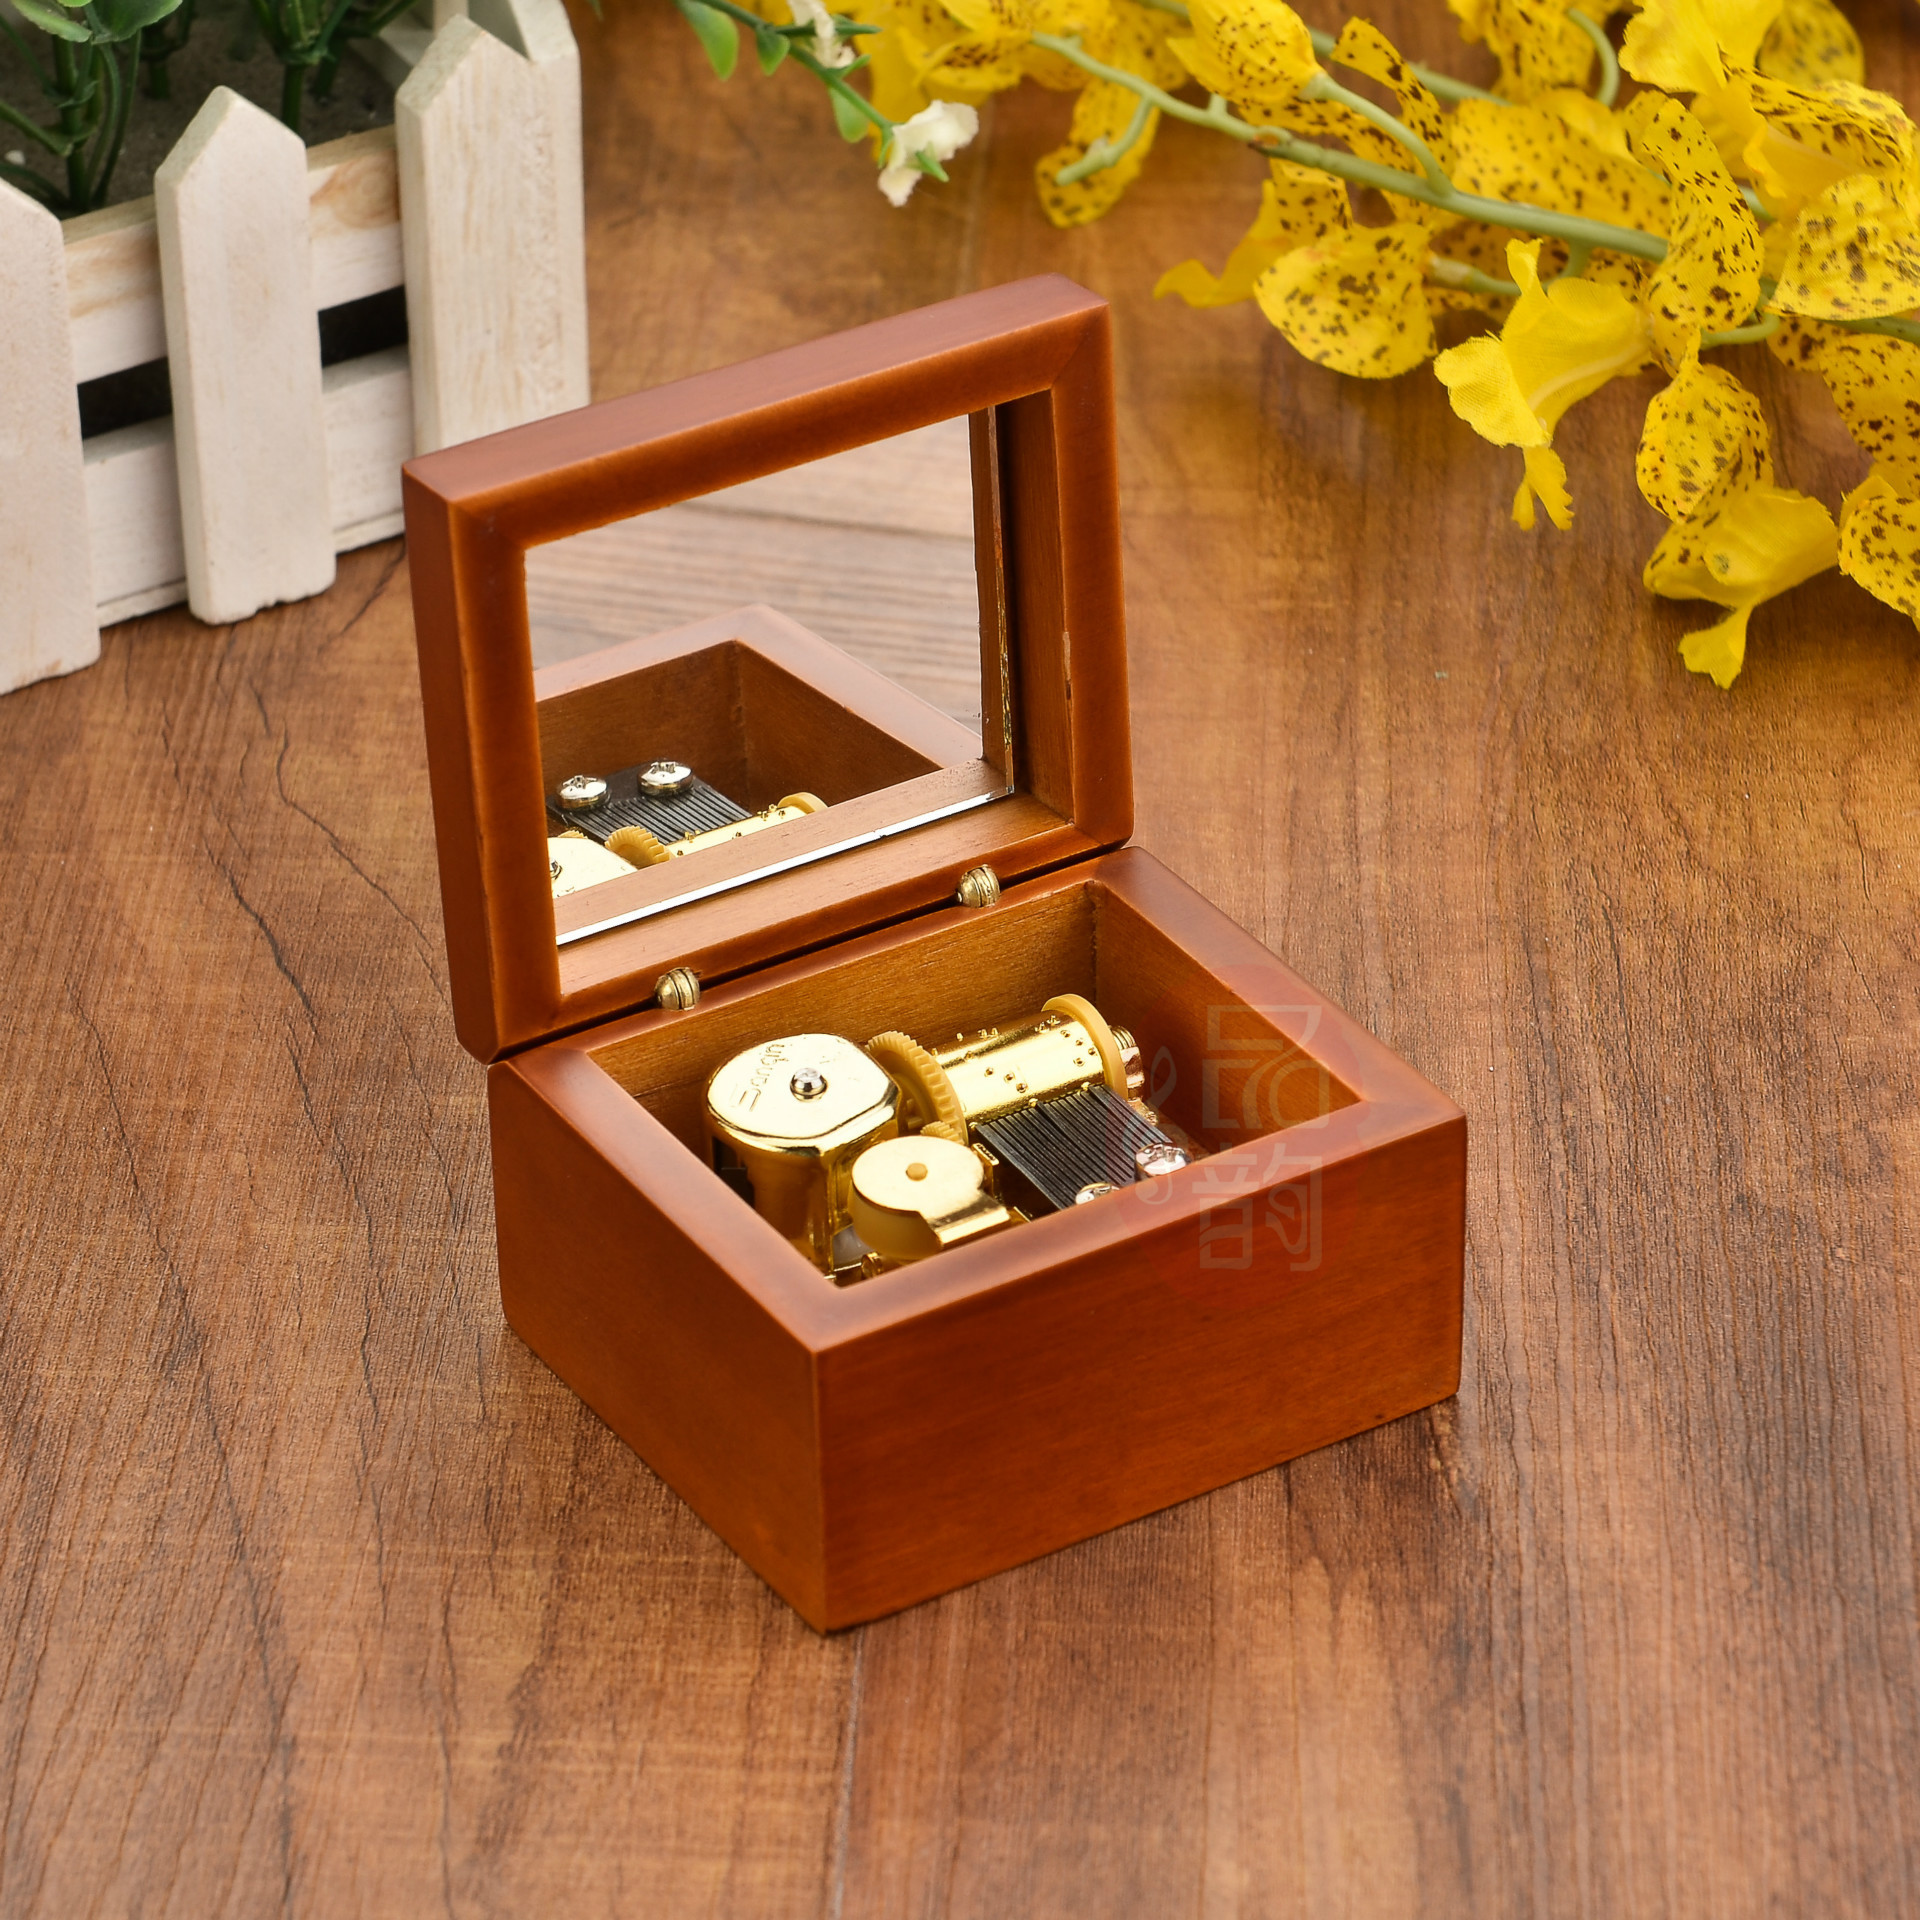 创意家居 12款曲目选择雕刻木质精美音乐盒 创意木质音乐盒-阿里巴巴